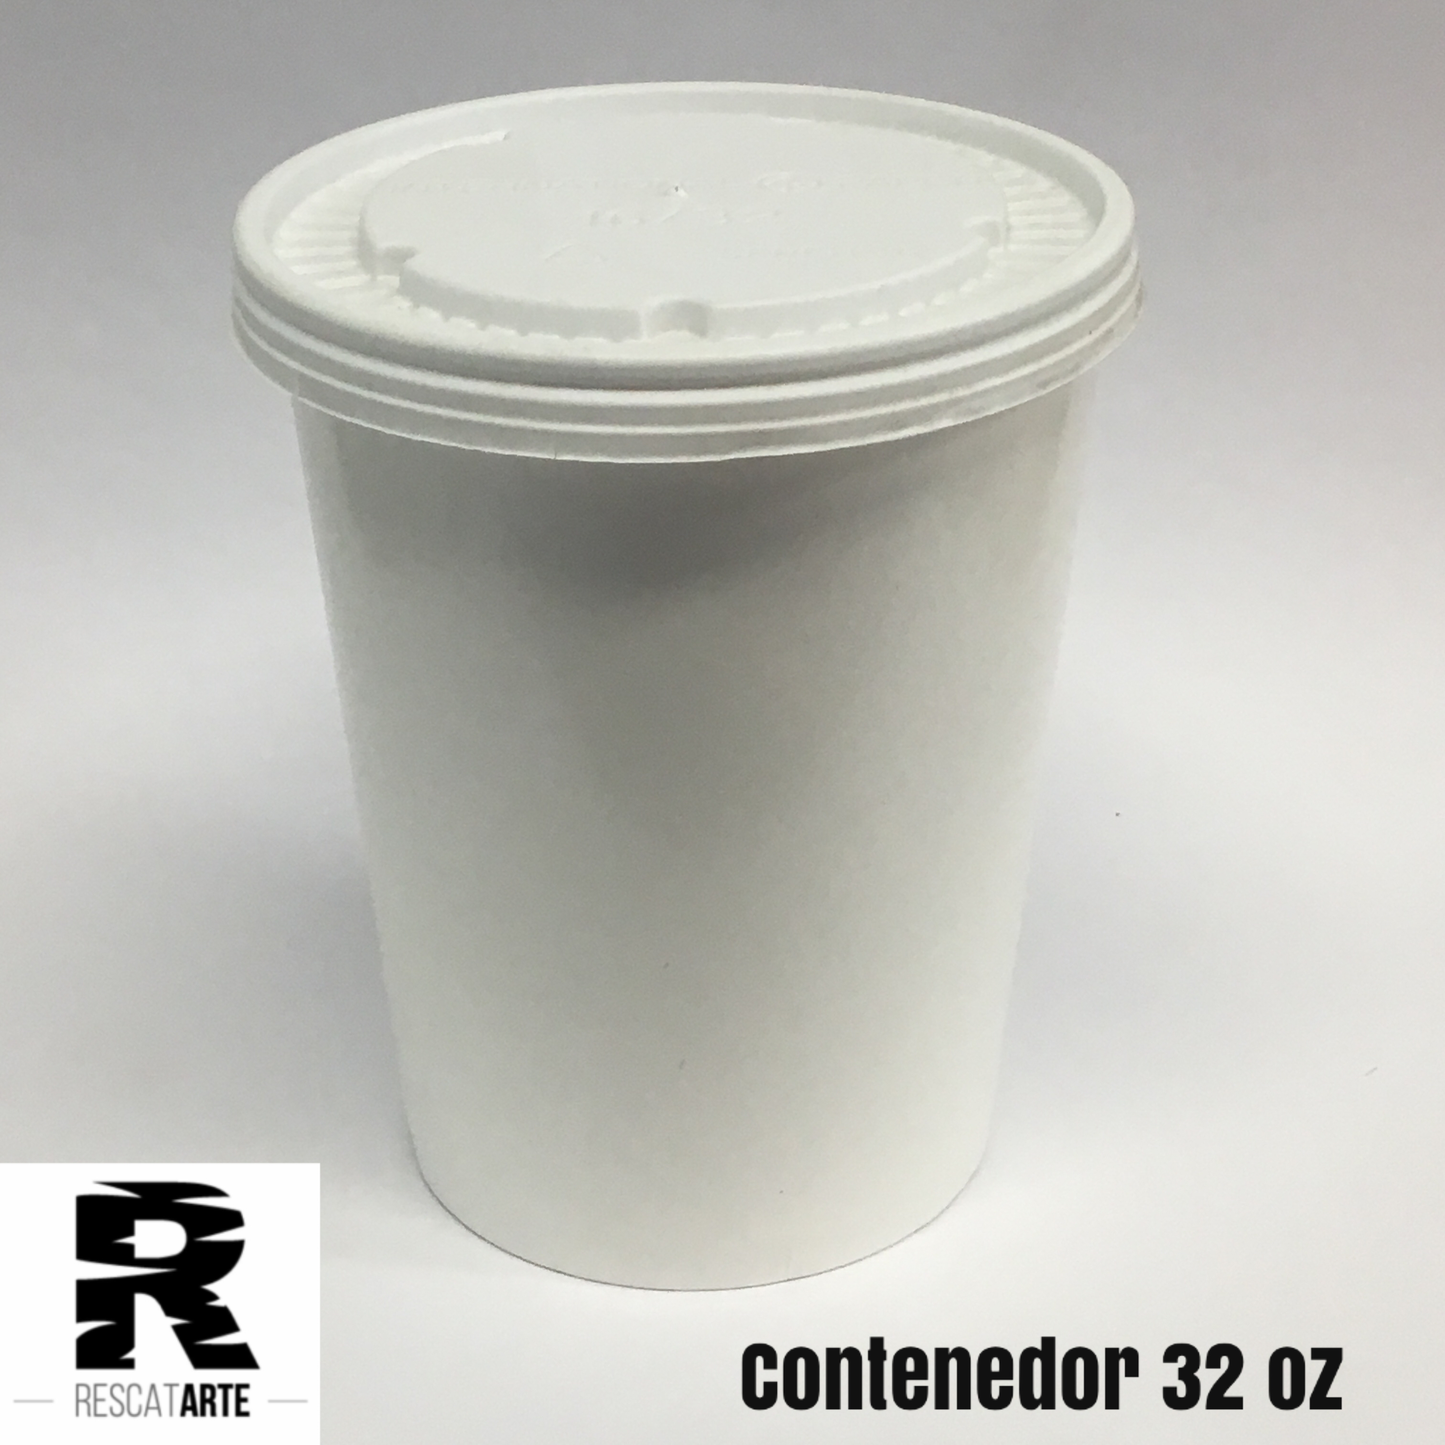 Contenedor desechable de 32 oz con tapa, elaborada en papel- 100% biodegradable